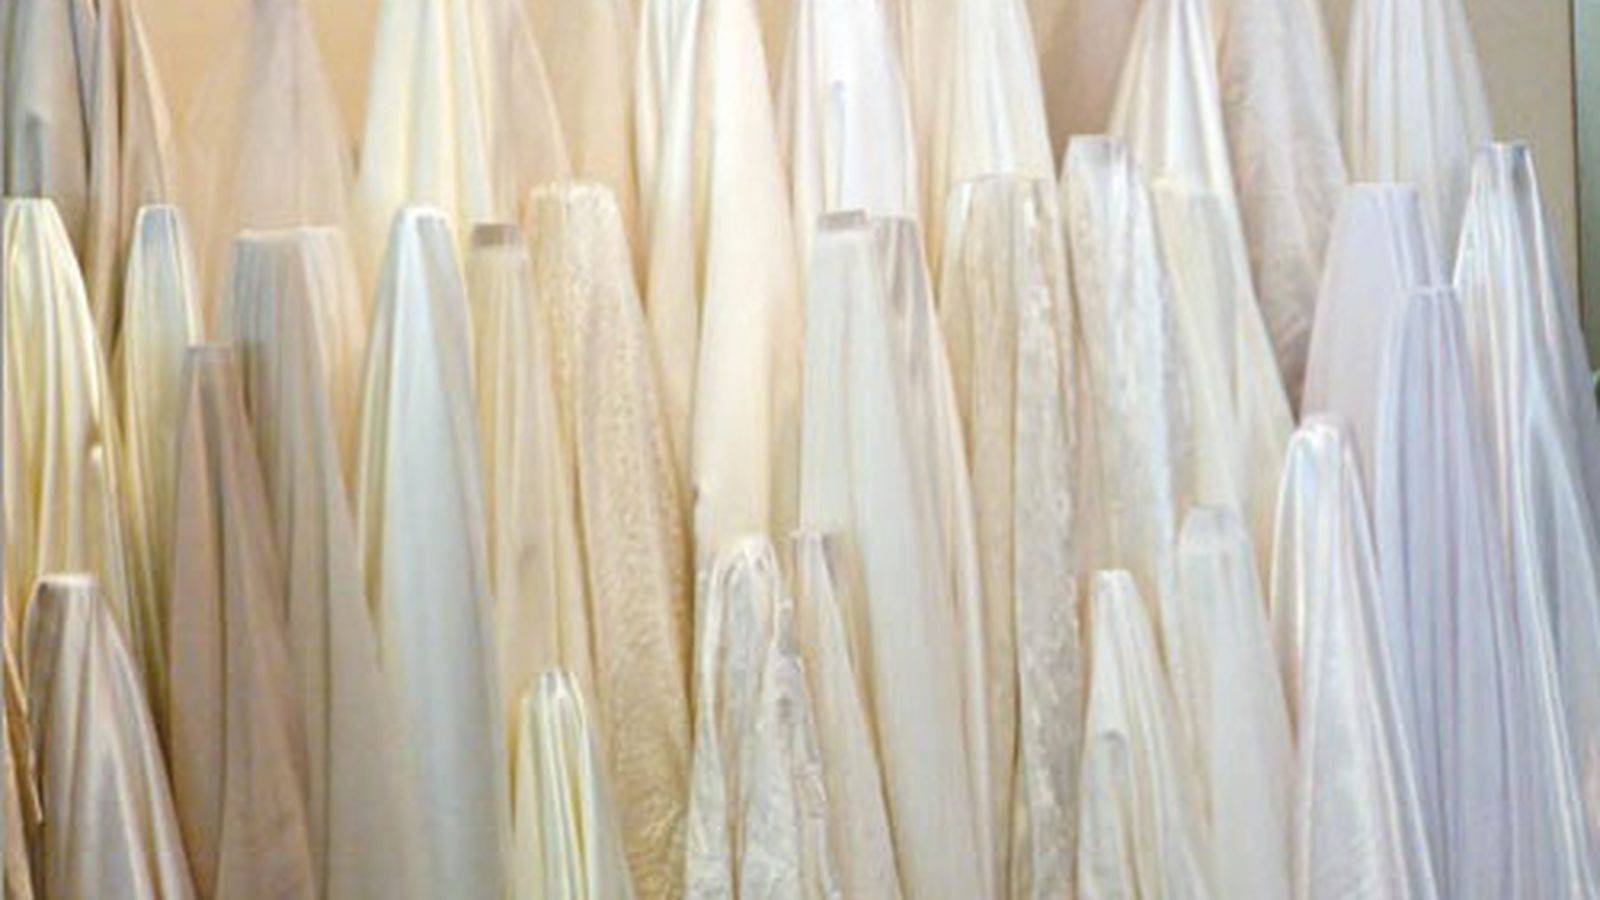 Прямые свадебные платья, стильные фасоны и интересные модели